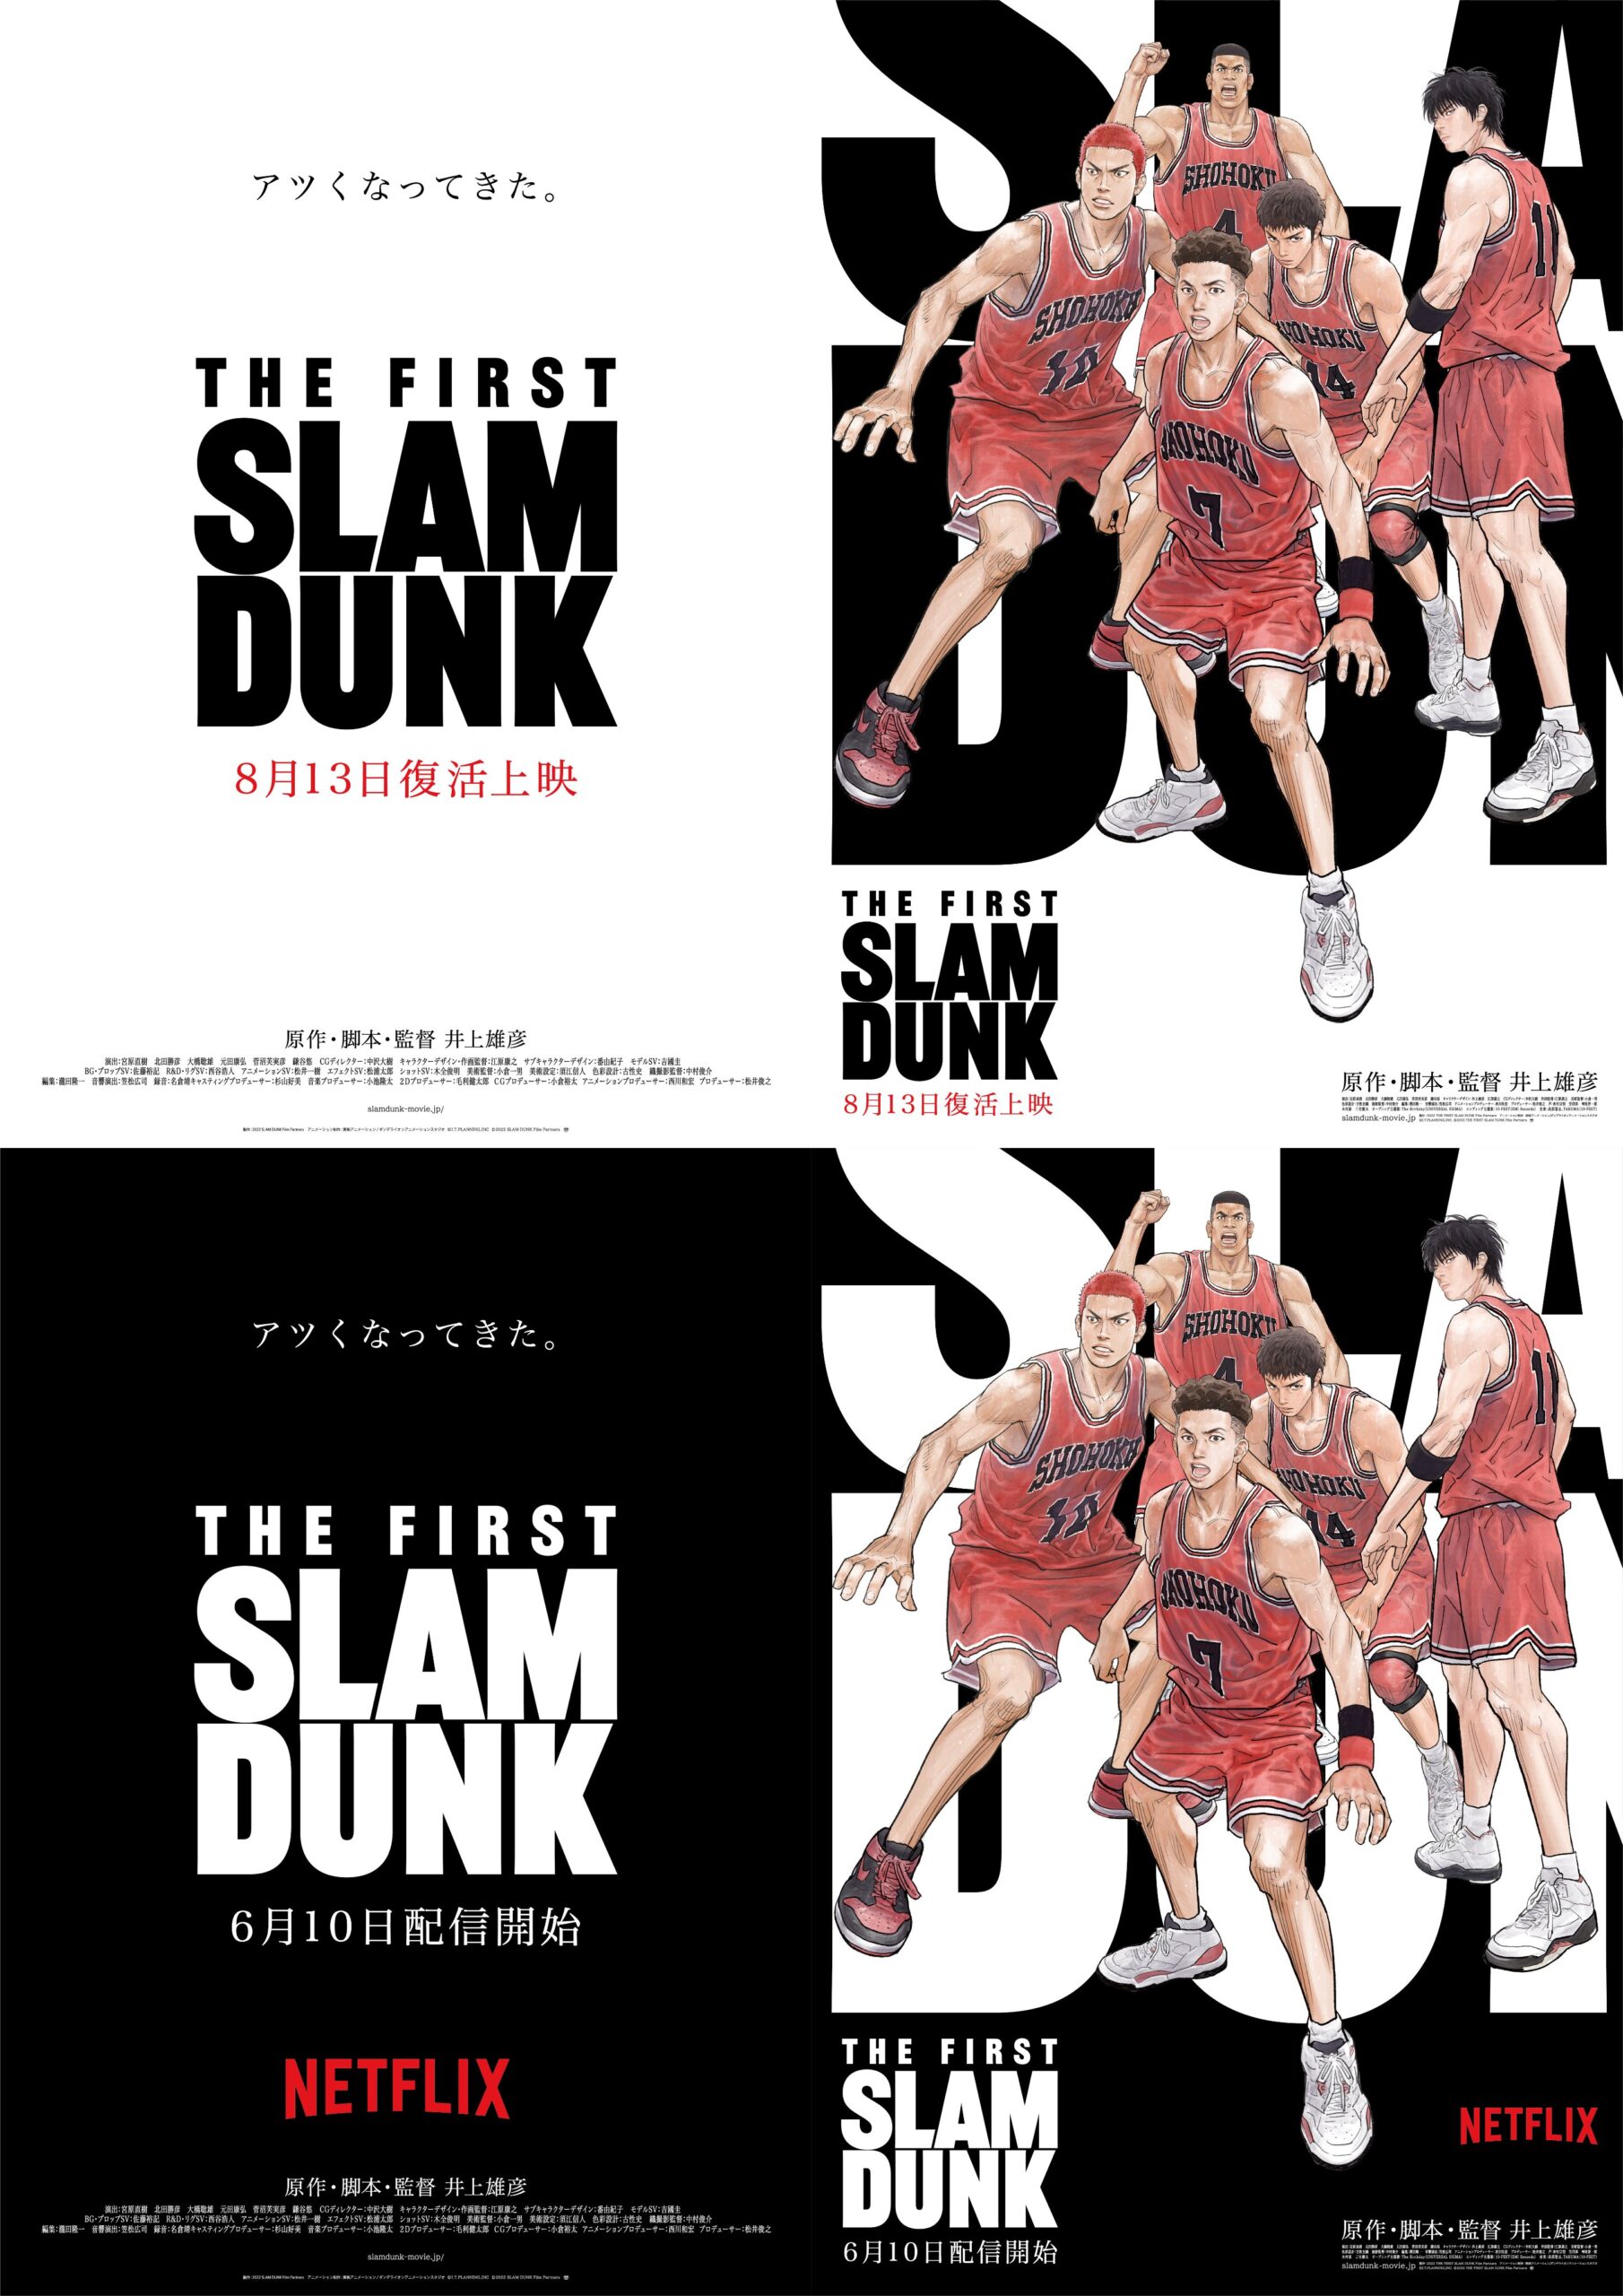 スラムダンク 劇場映画 THE FIRST SLAM DUNK が Netflixにて配信決定